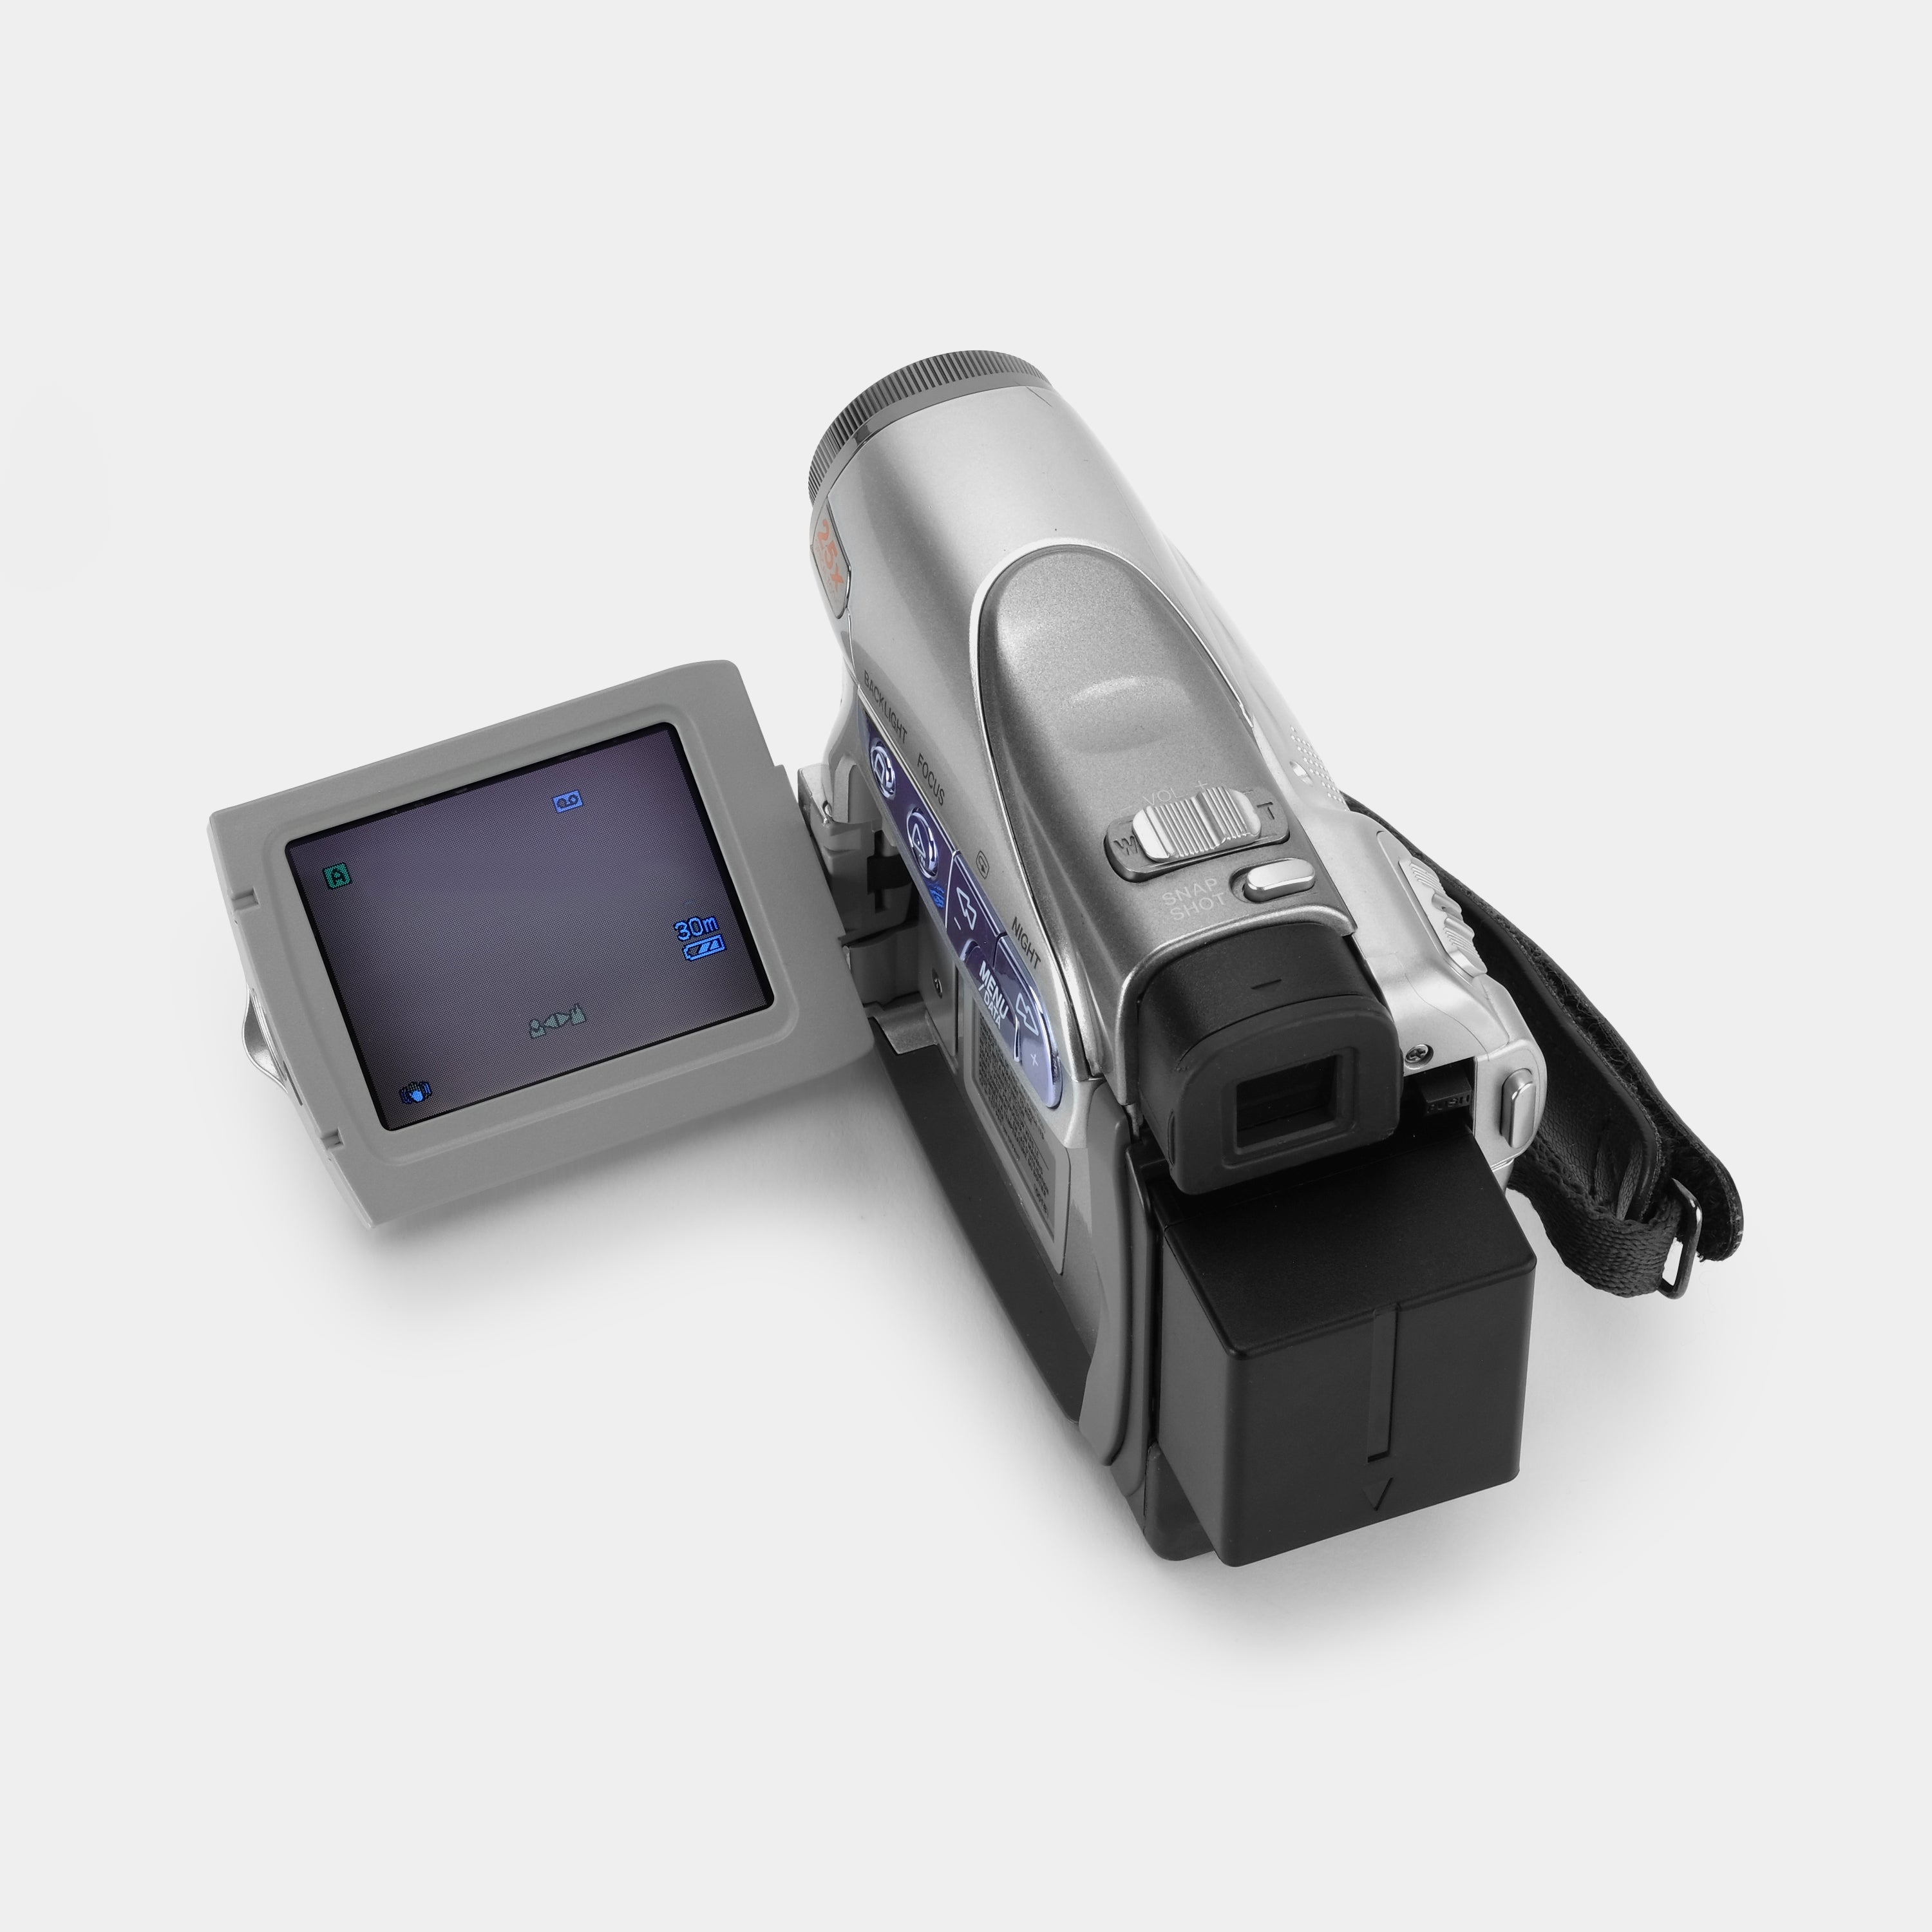 JVC GR-D250 Digital Video Camcorder